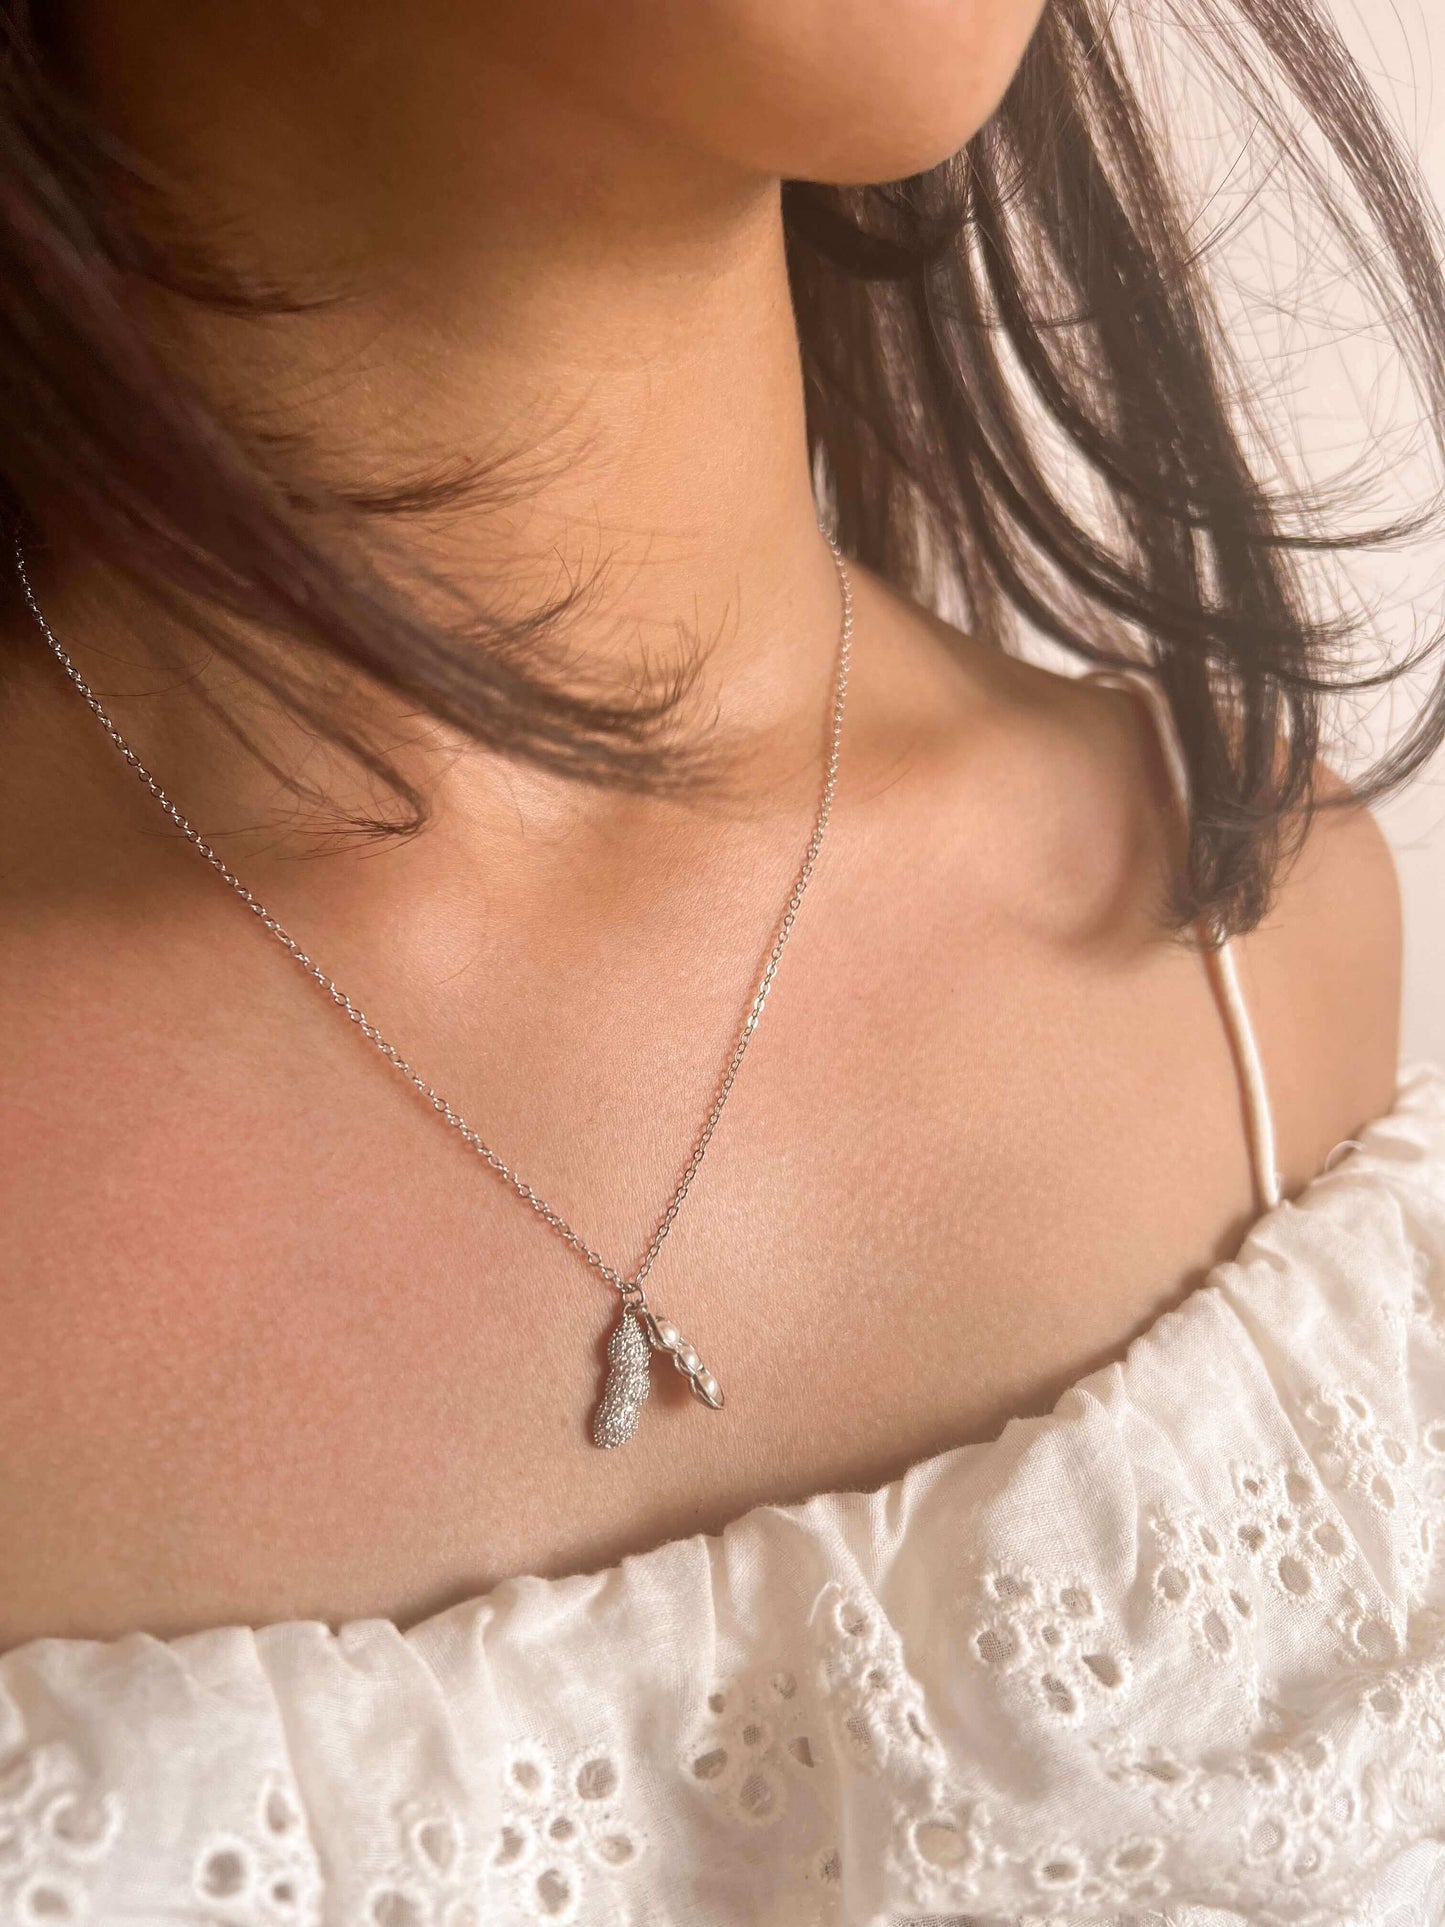 Tamarind silver neck chain in zircon